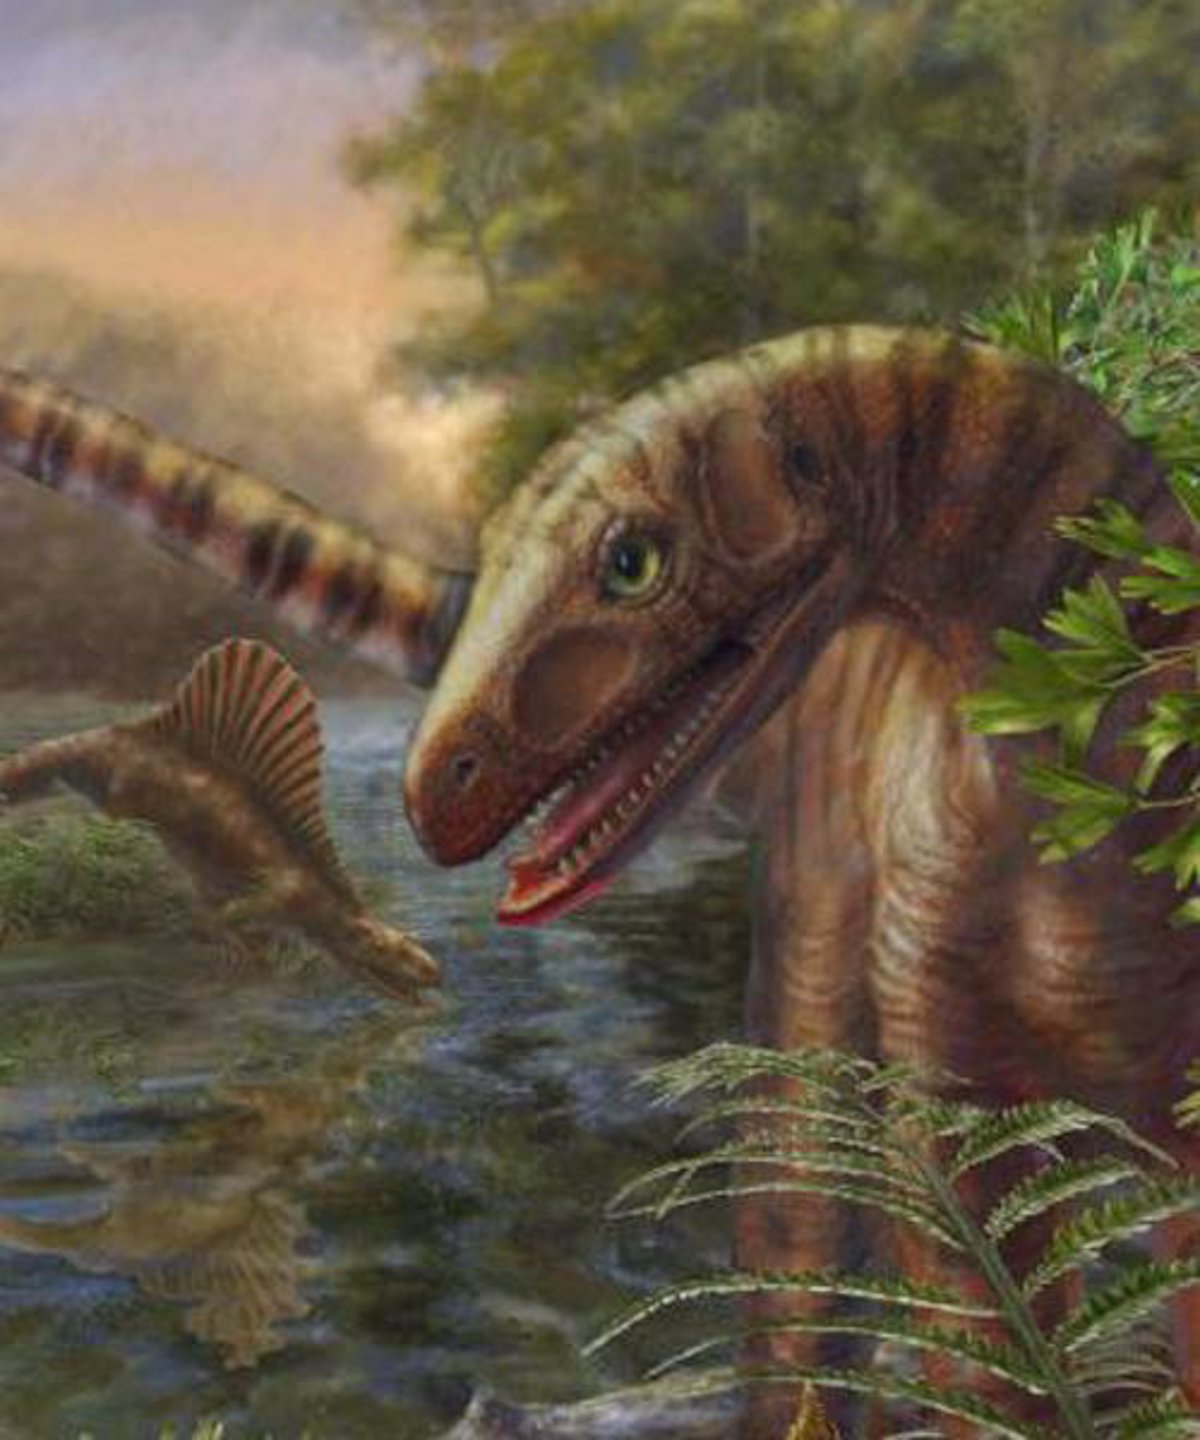 Los dinosaurios habitaron la Tierra mucho antes de lo pensado